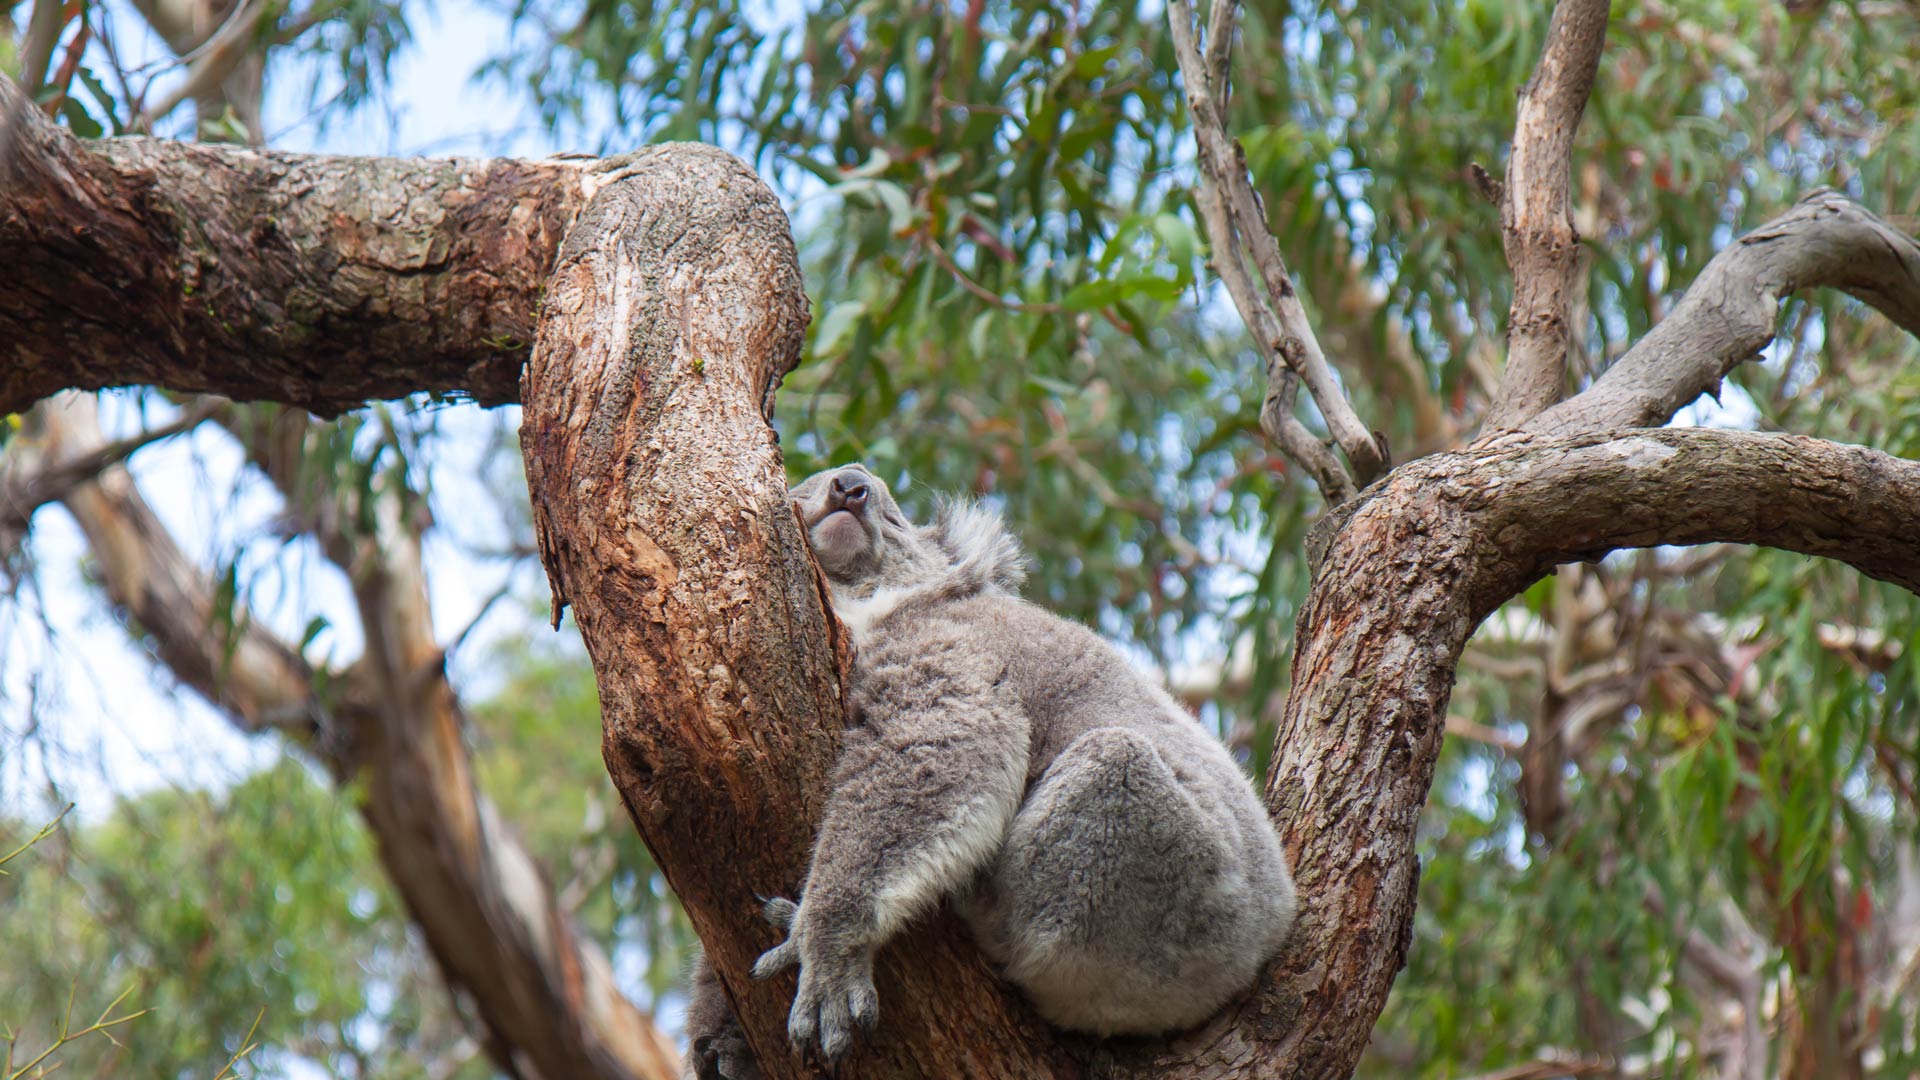 A koala sleeping in a eucalyptus tree